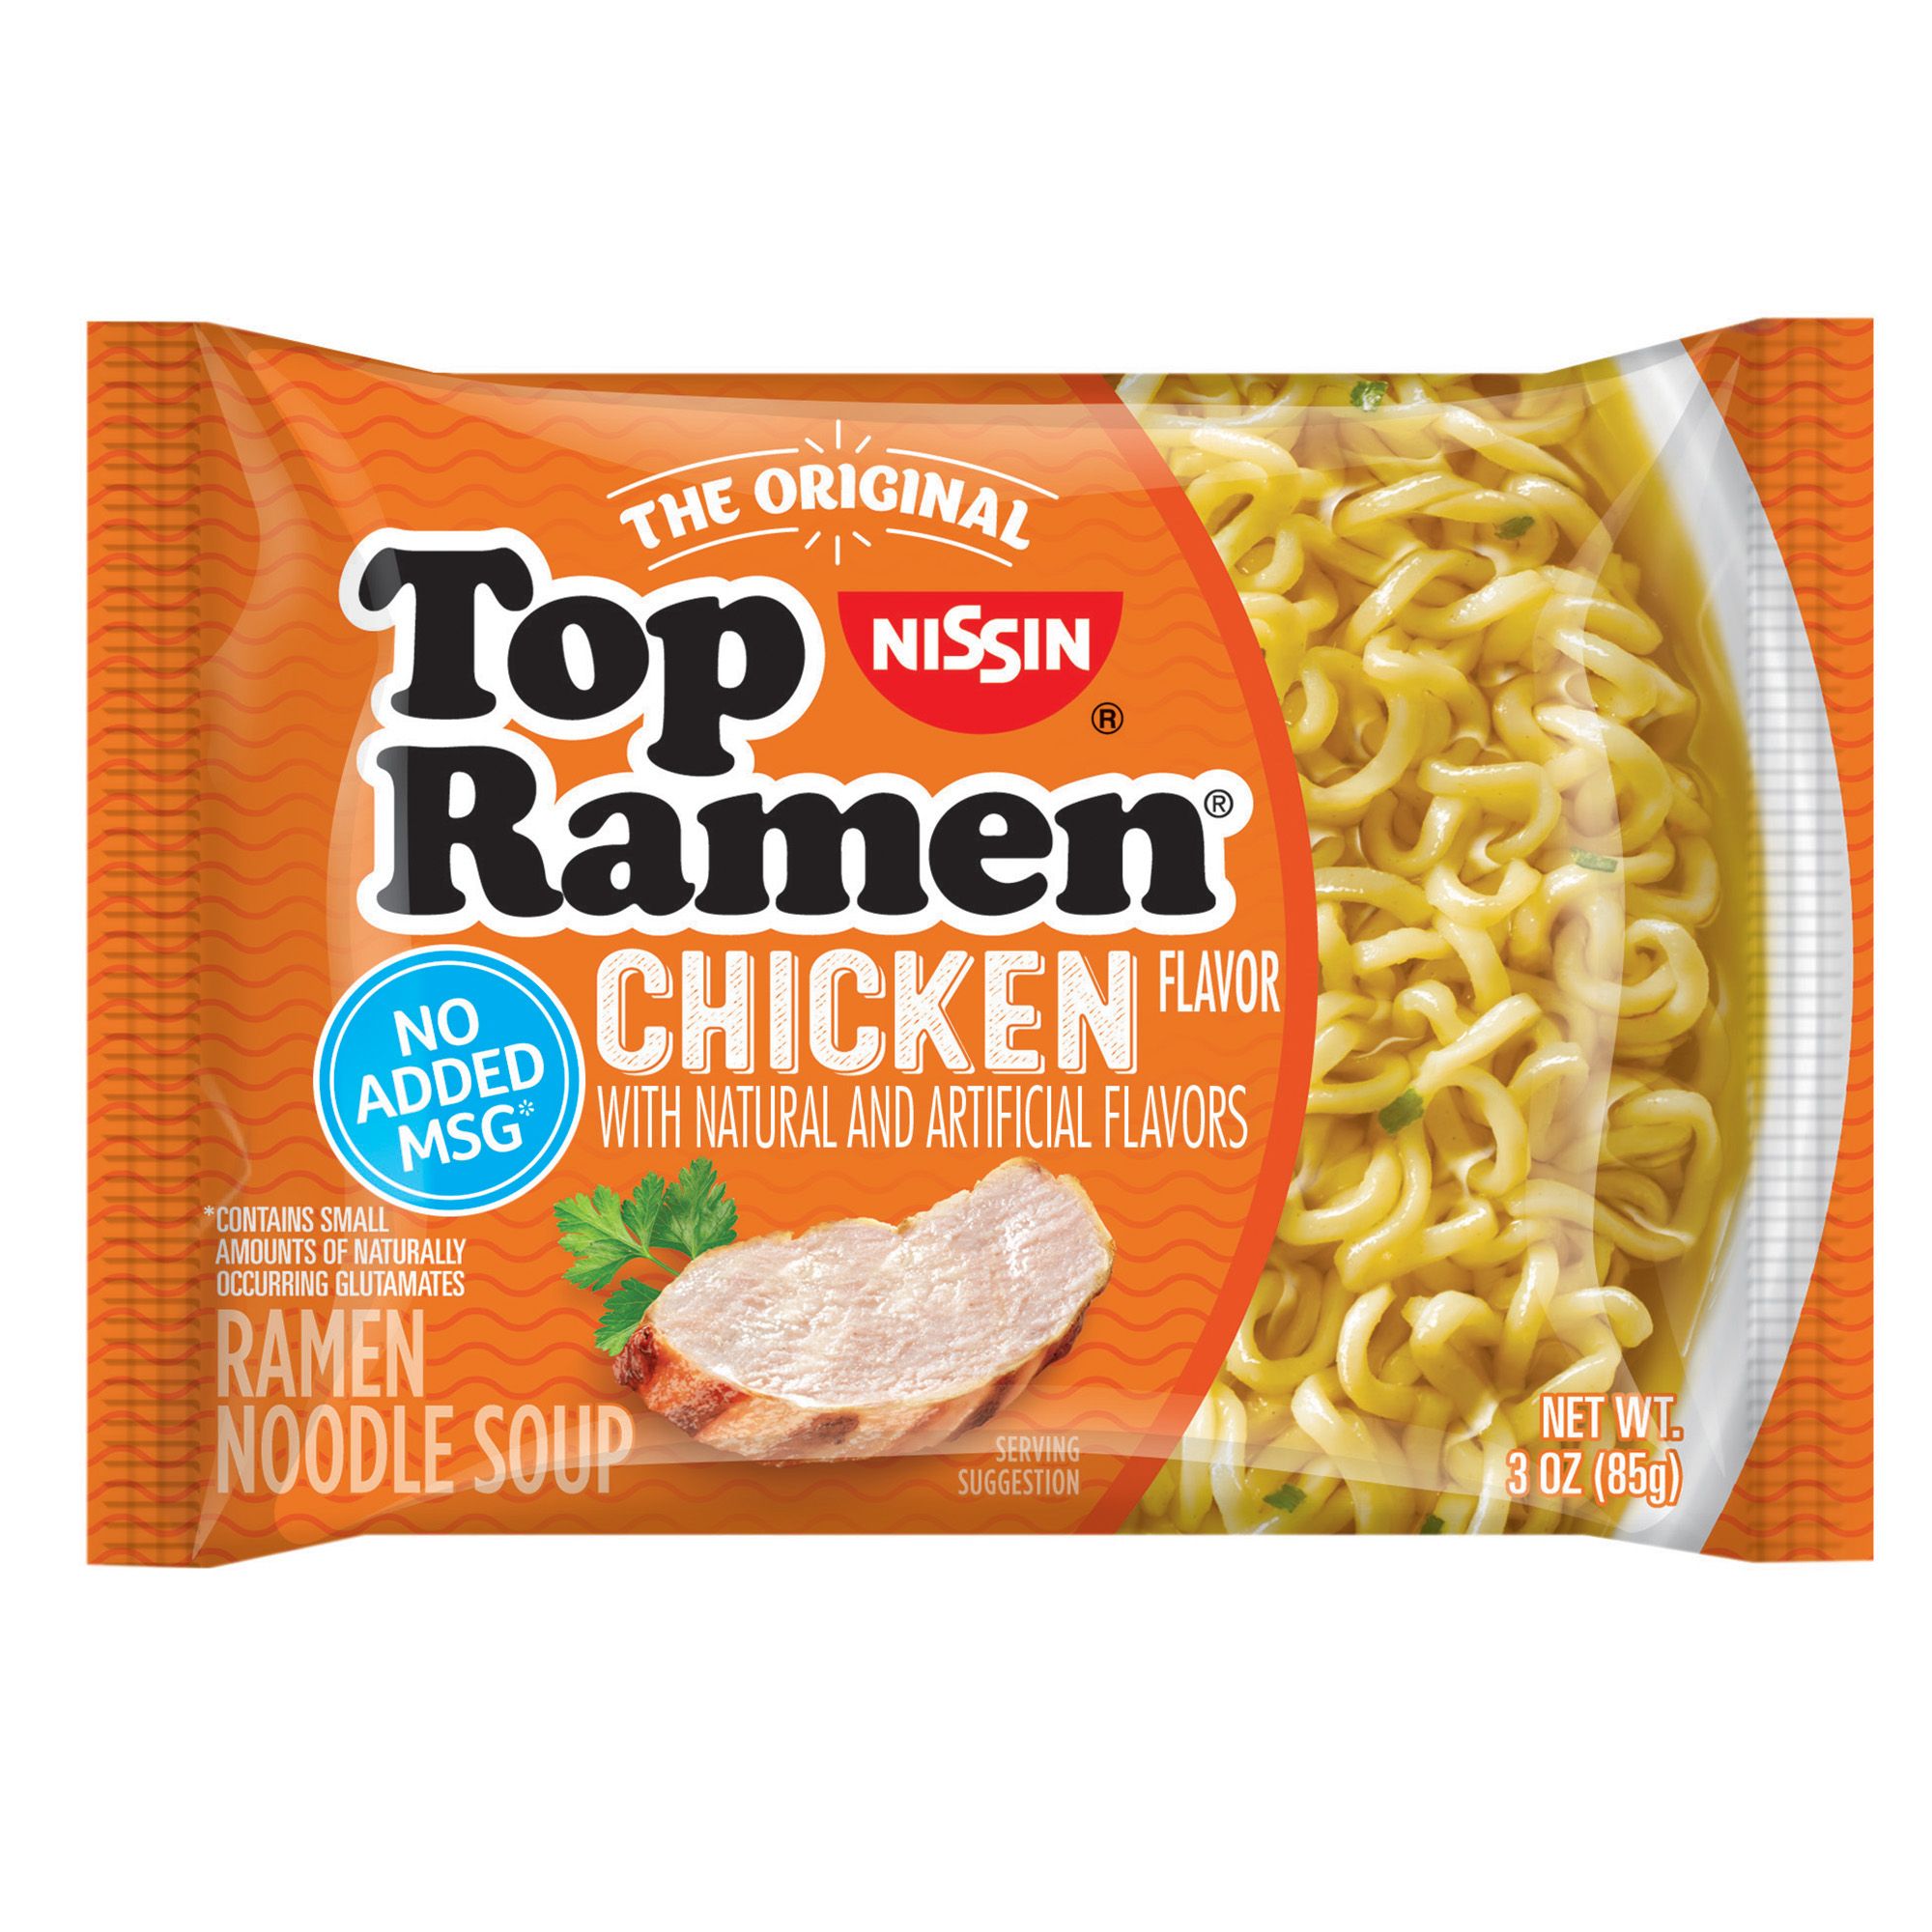 Nissin Top Ramen Chicken Flavor Noodle Soup, 48 pk./3 oz.